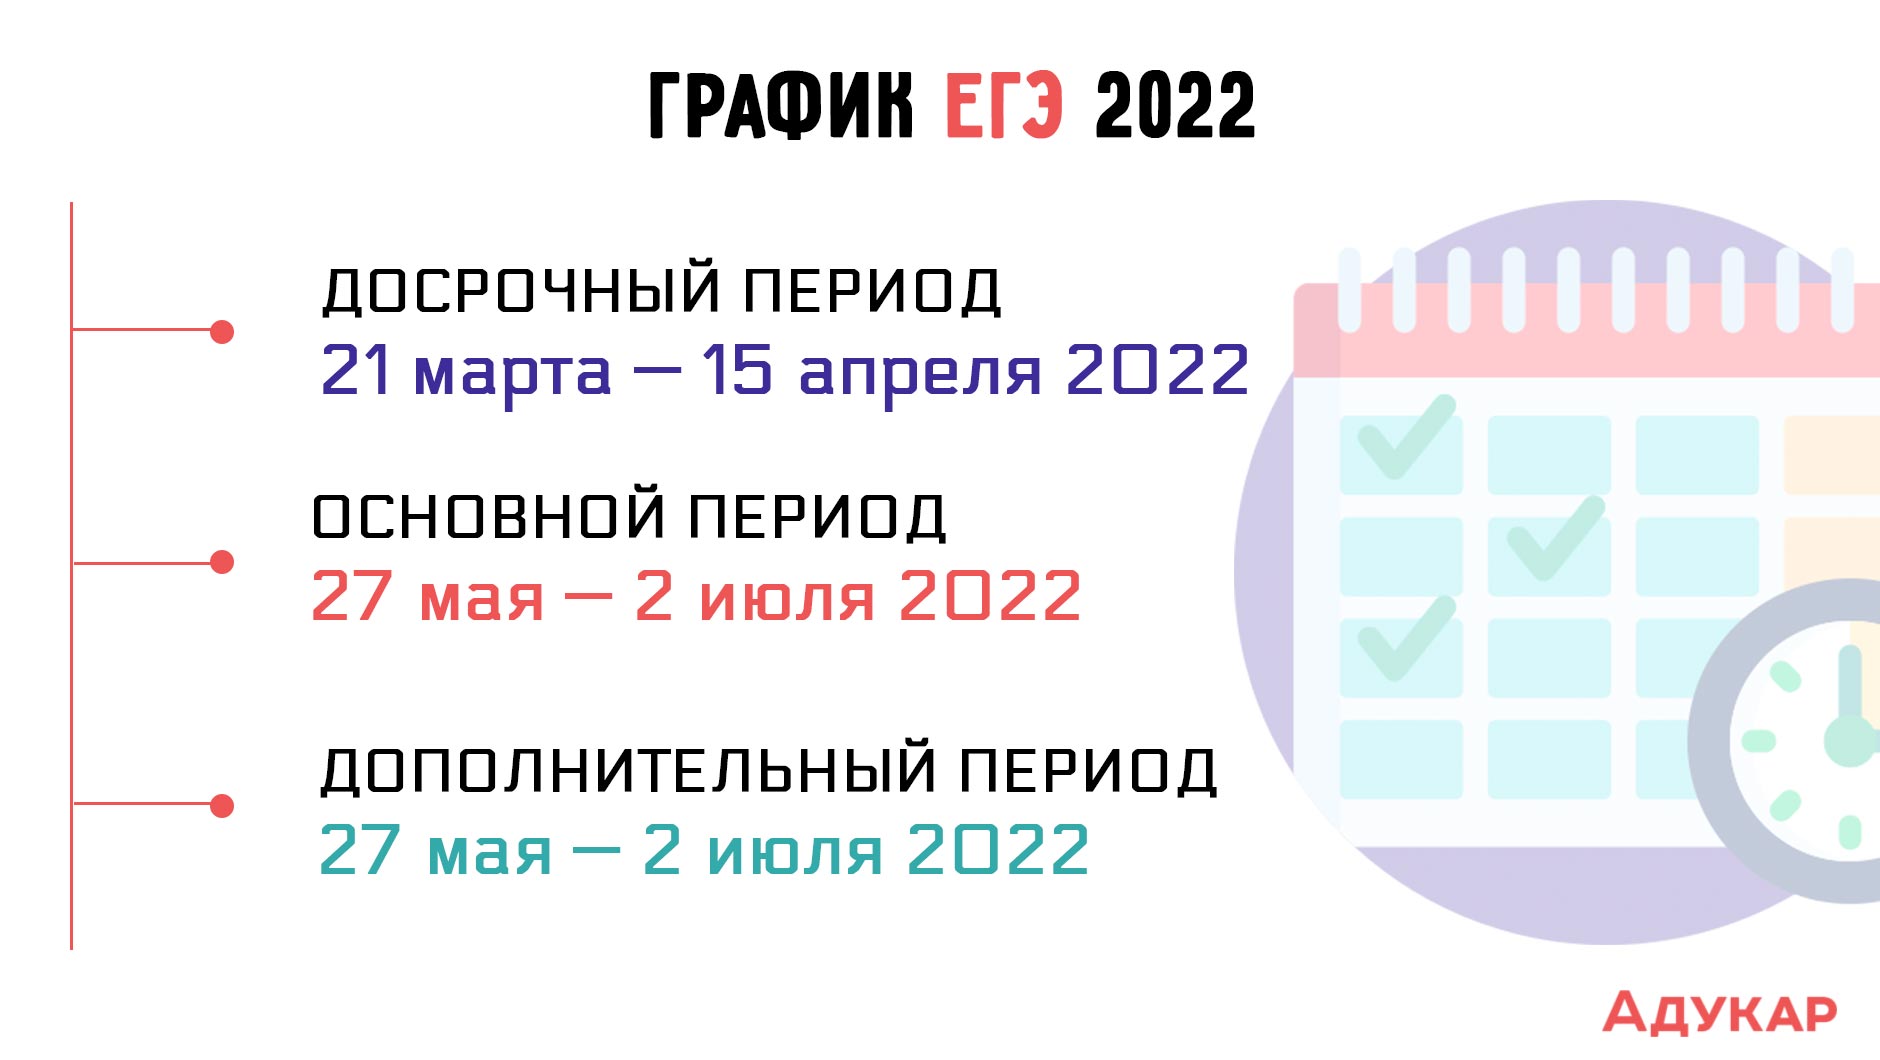 Проект дат егэ. ЕГЭ 2022. Даты ЕГЭ 2022. Периоды ЕГЭ 2022. Сдача ЕГЭ В 2022.